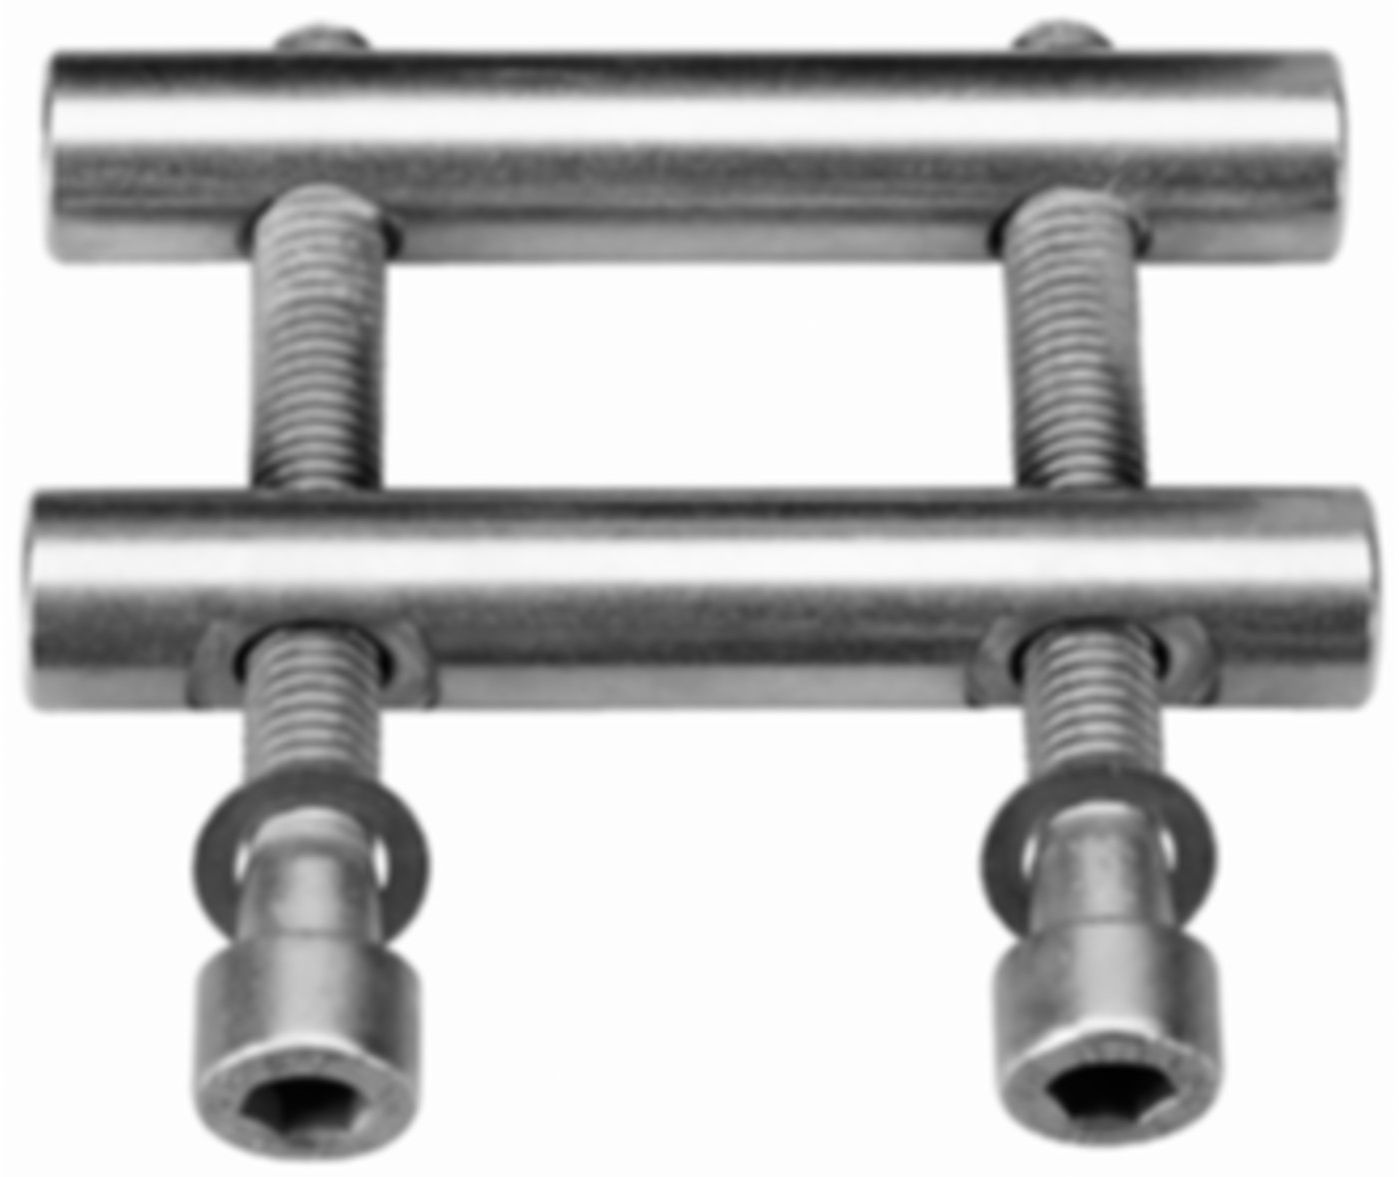 Verschlüsse aus rostfreiem Stahl zu Metal-/Plast-/Combi-Grip 54.0- 63.0 mm - Straub Kupplungen